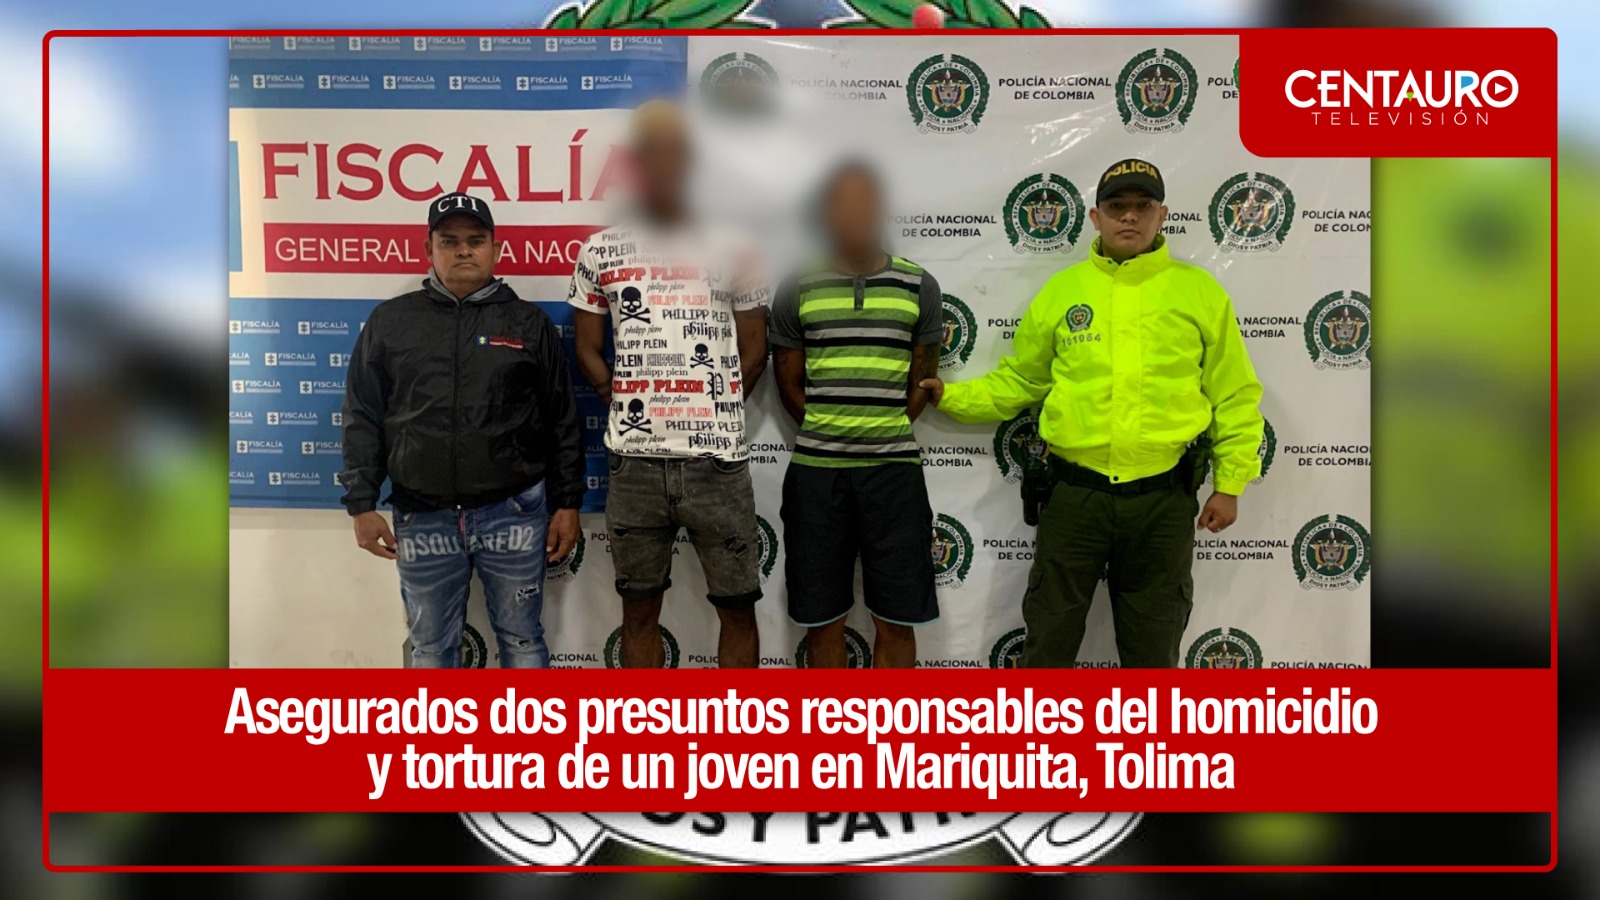 Asegurados dos presuntos responsables del homicidio y tortura de un joven en mariquita (Tolima)